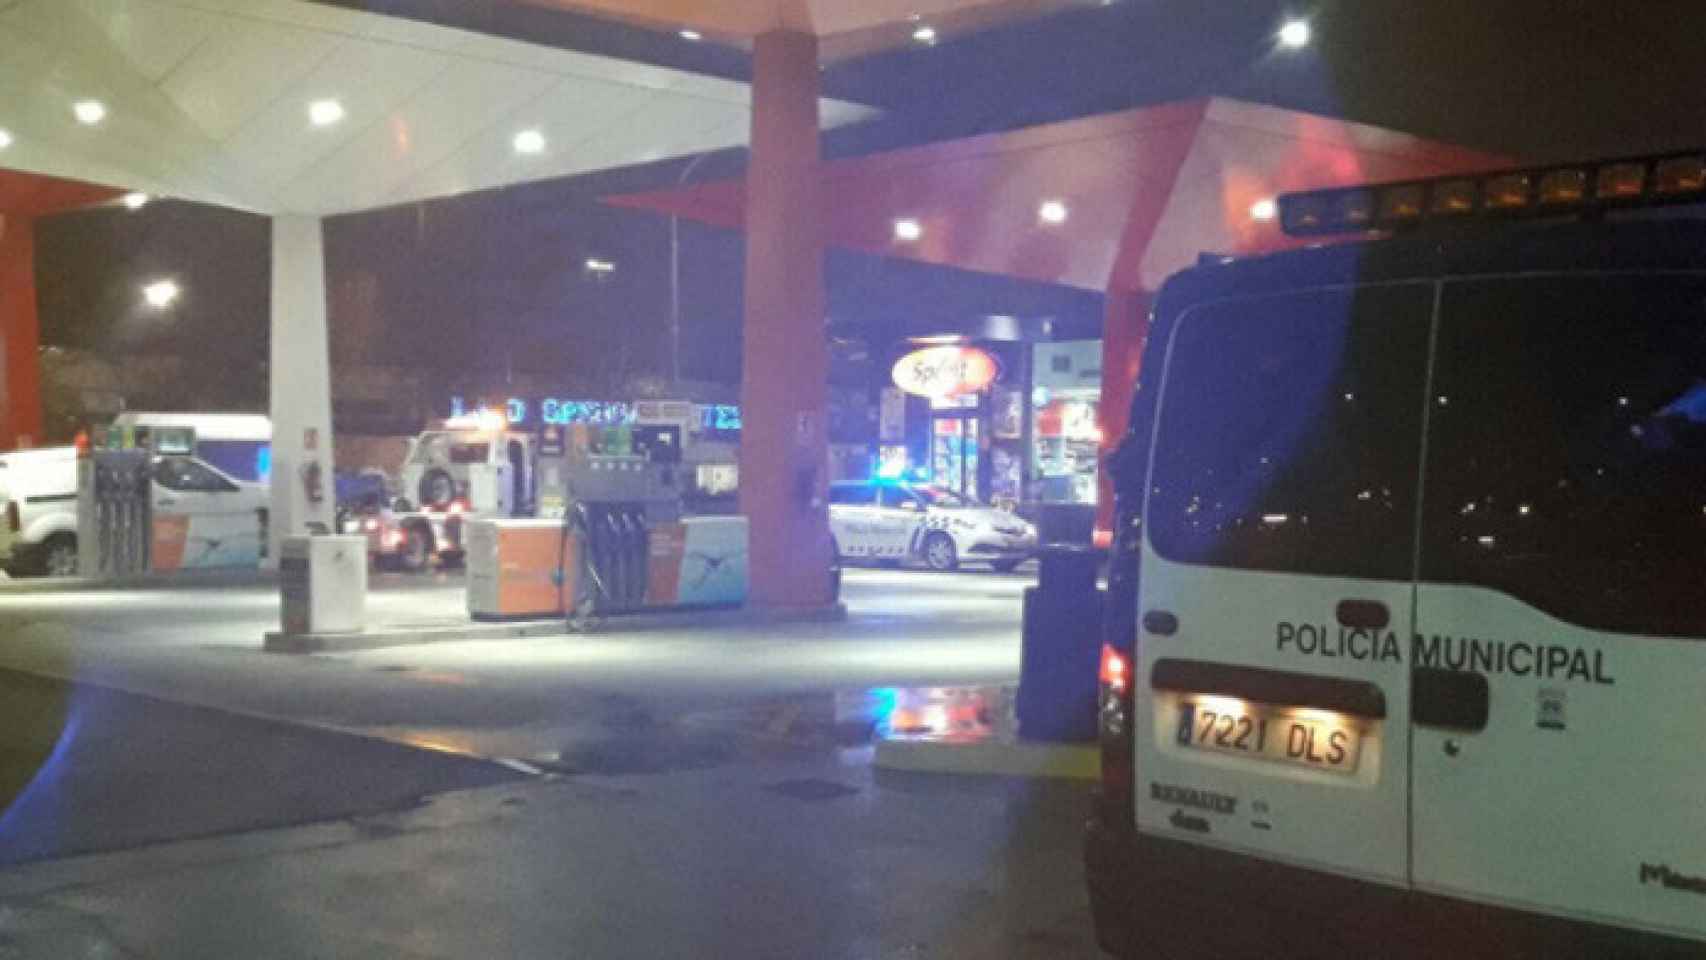 Valladolid-policia-alcohol-gasolinera-ronda